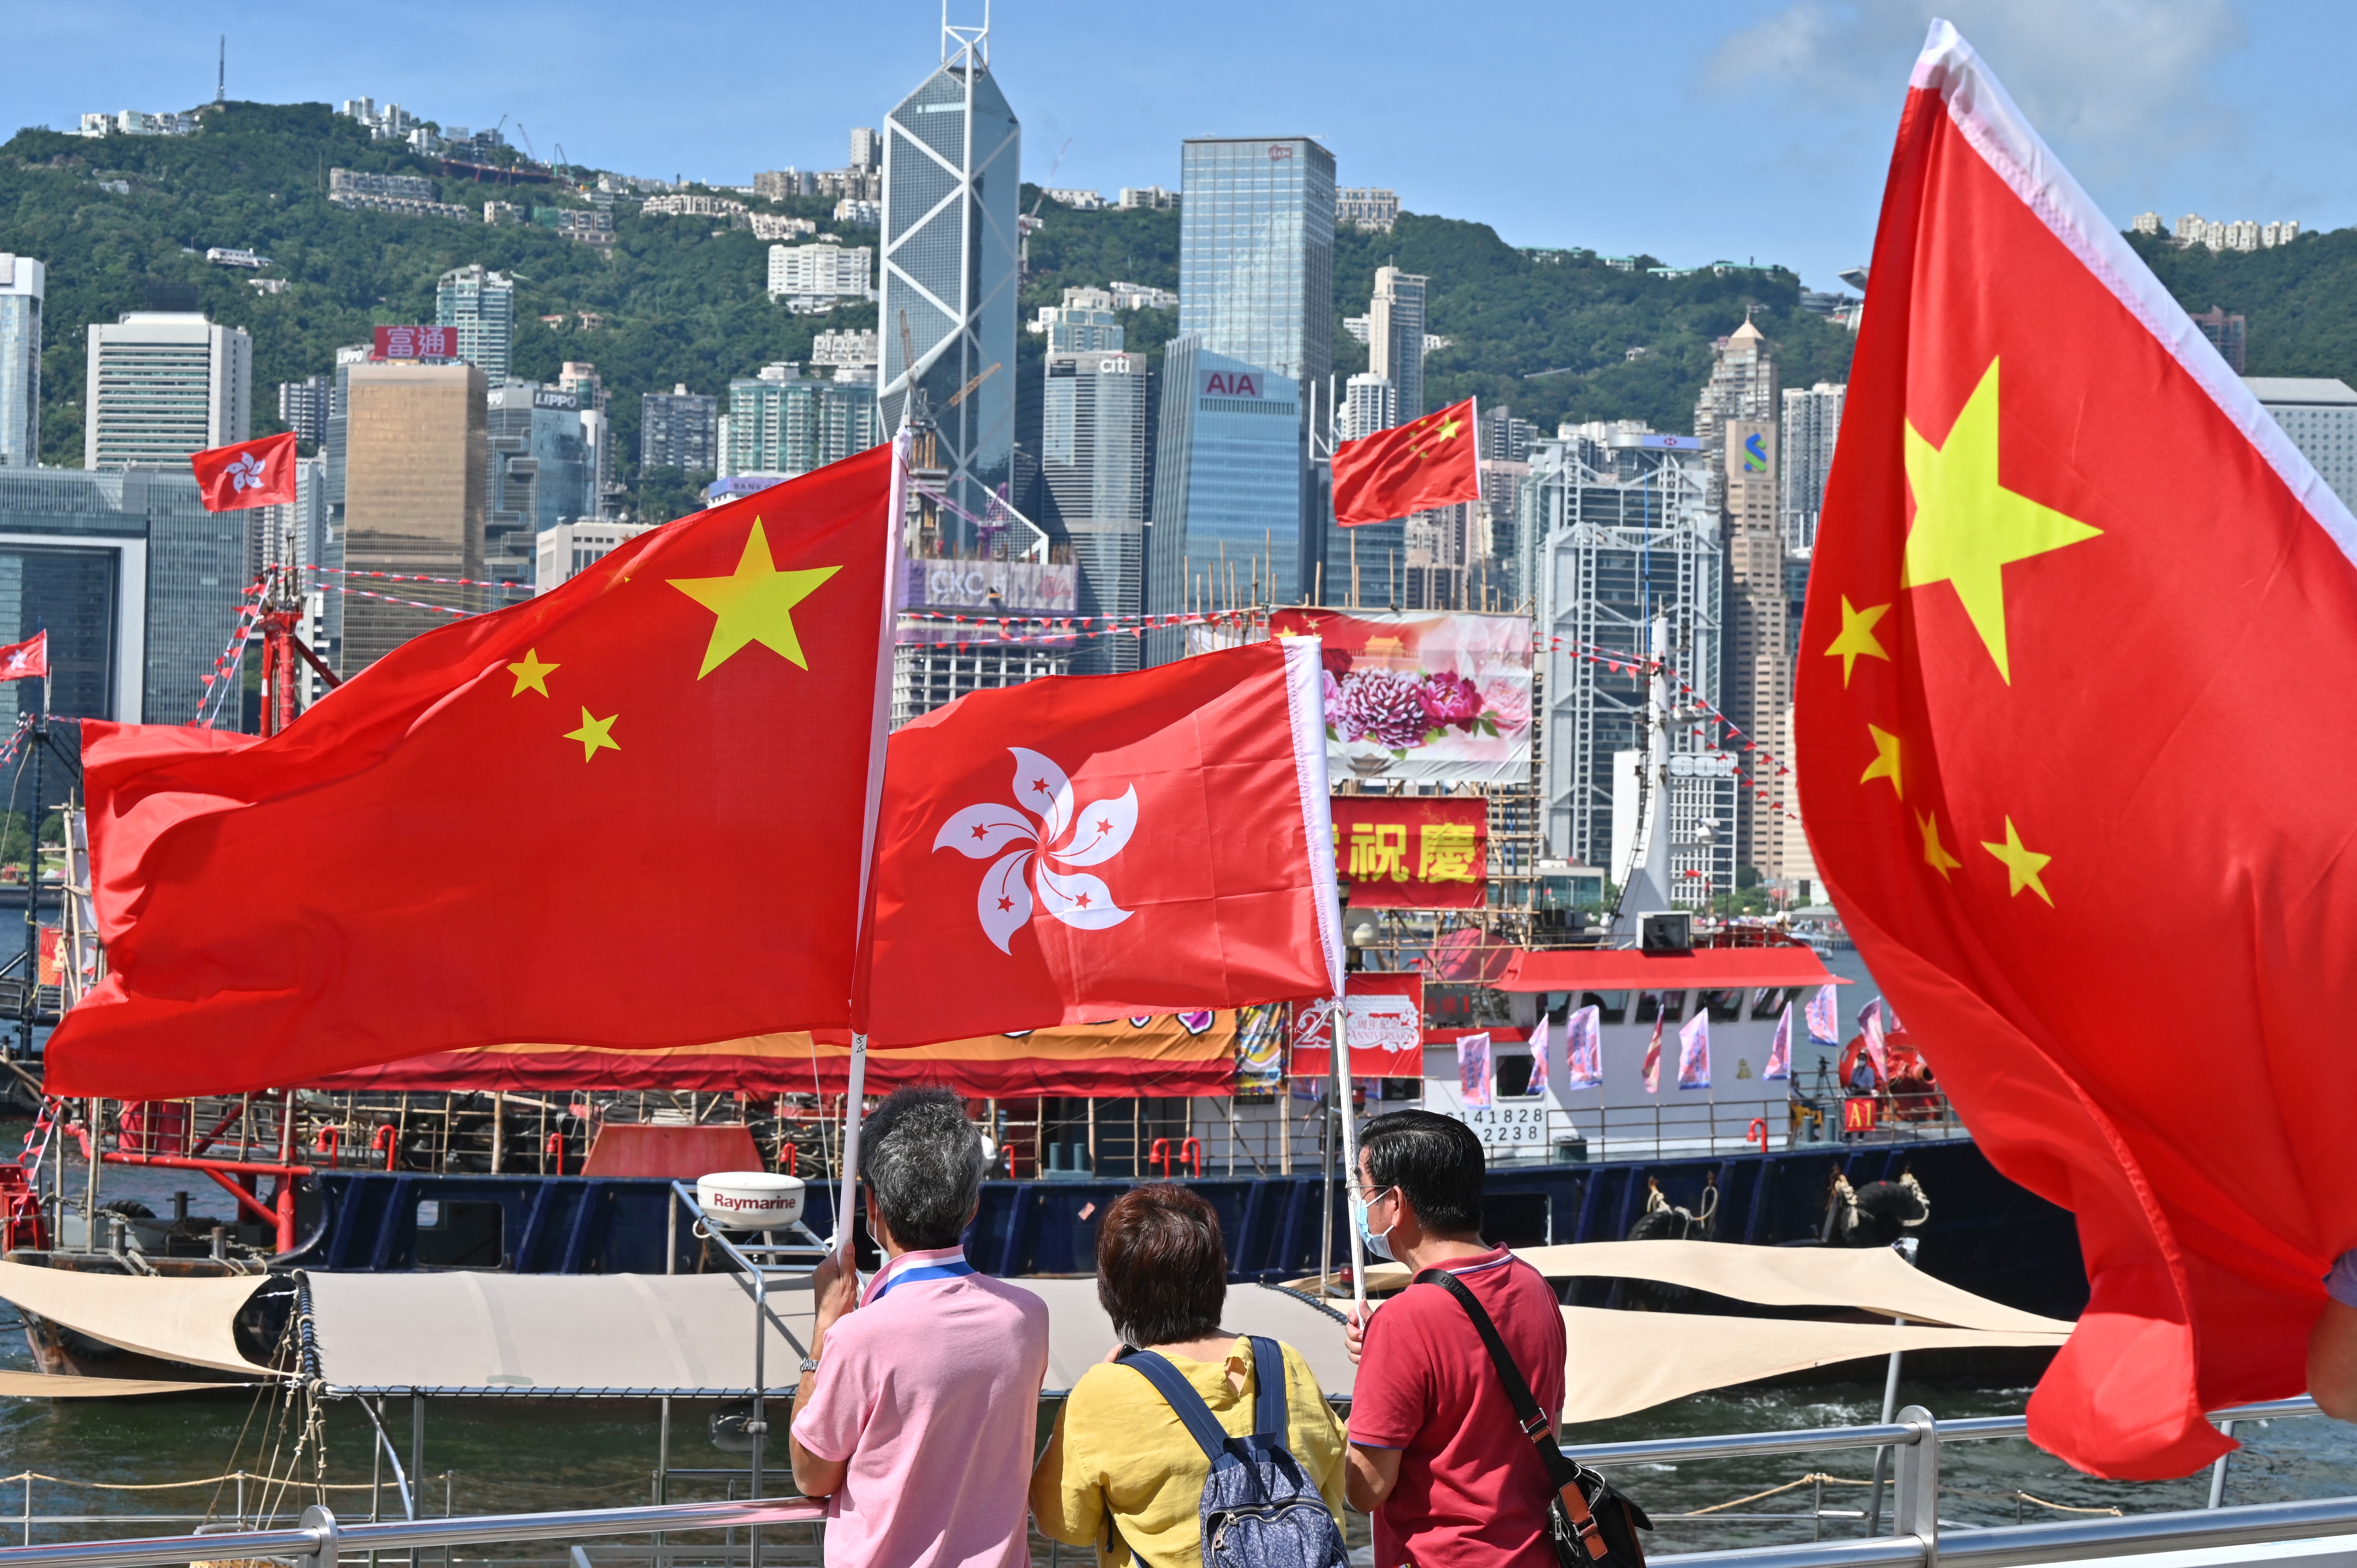 Tương lai chính trị của Hồng Kông sau 25 năm - Hồng Kông đã trải qua 25 năm kể từ khi trao lại cho Trung Quốc. Trong thời gian này, thành phố đã trở thành một trong những trung tâm tài chính và thương mại lớn nhất thế giới. Với những thay đổi và biến động chính trị gần đây, tương lai của Hồng Kông đang rất đáng quan tâm. Hãy cùng xem hình ảnh và tìm hiểu về tương lai chính trị của thành phố này.